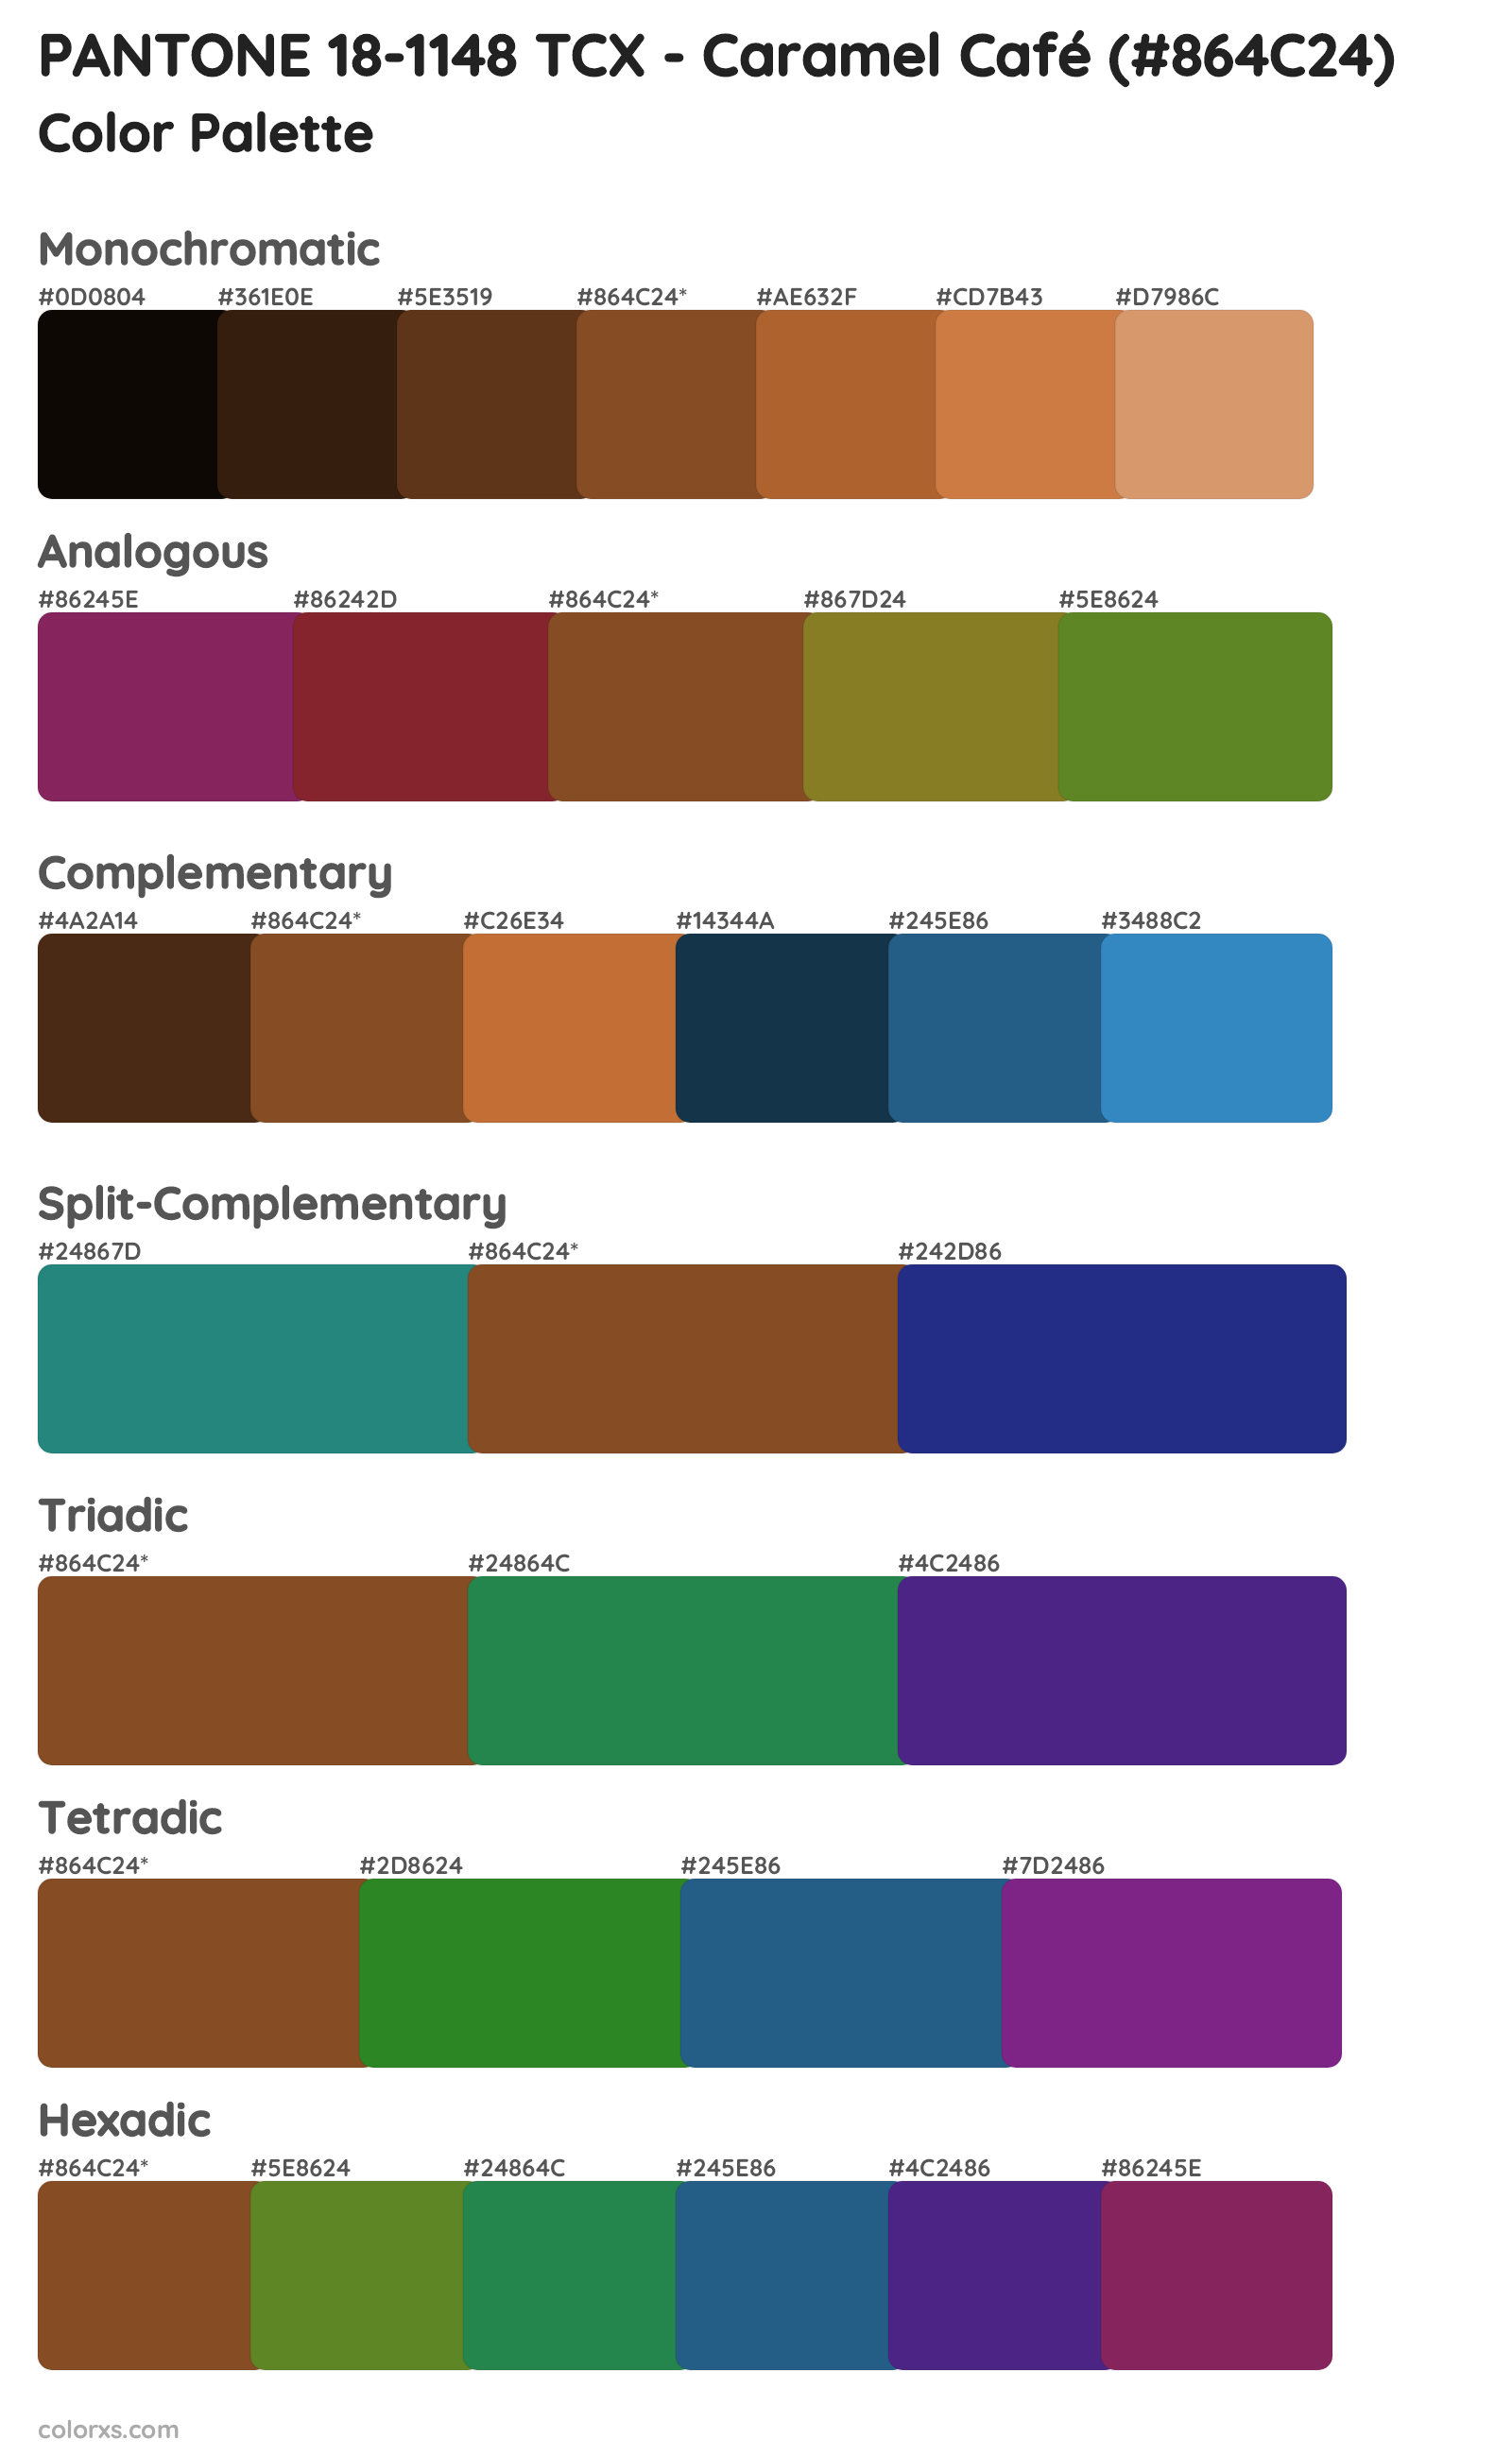 PANTONE 18-1148 TCX - Caramel Café Color Scheme Palettes